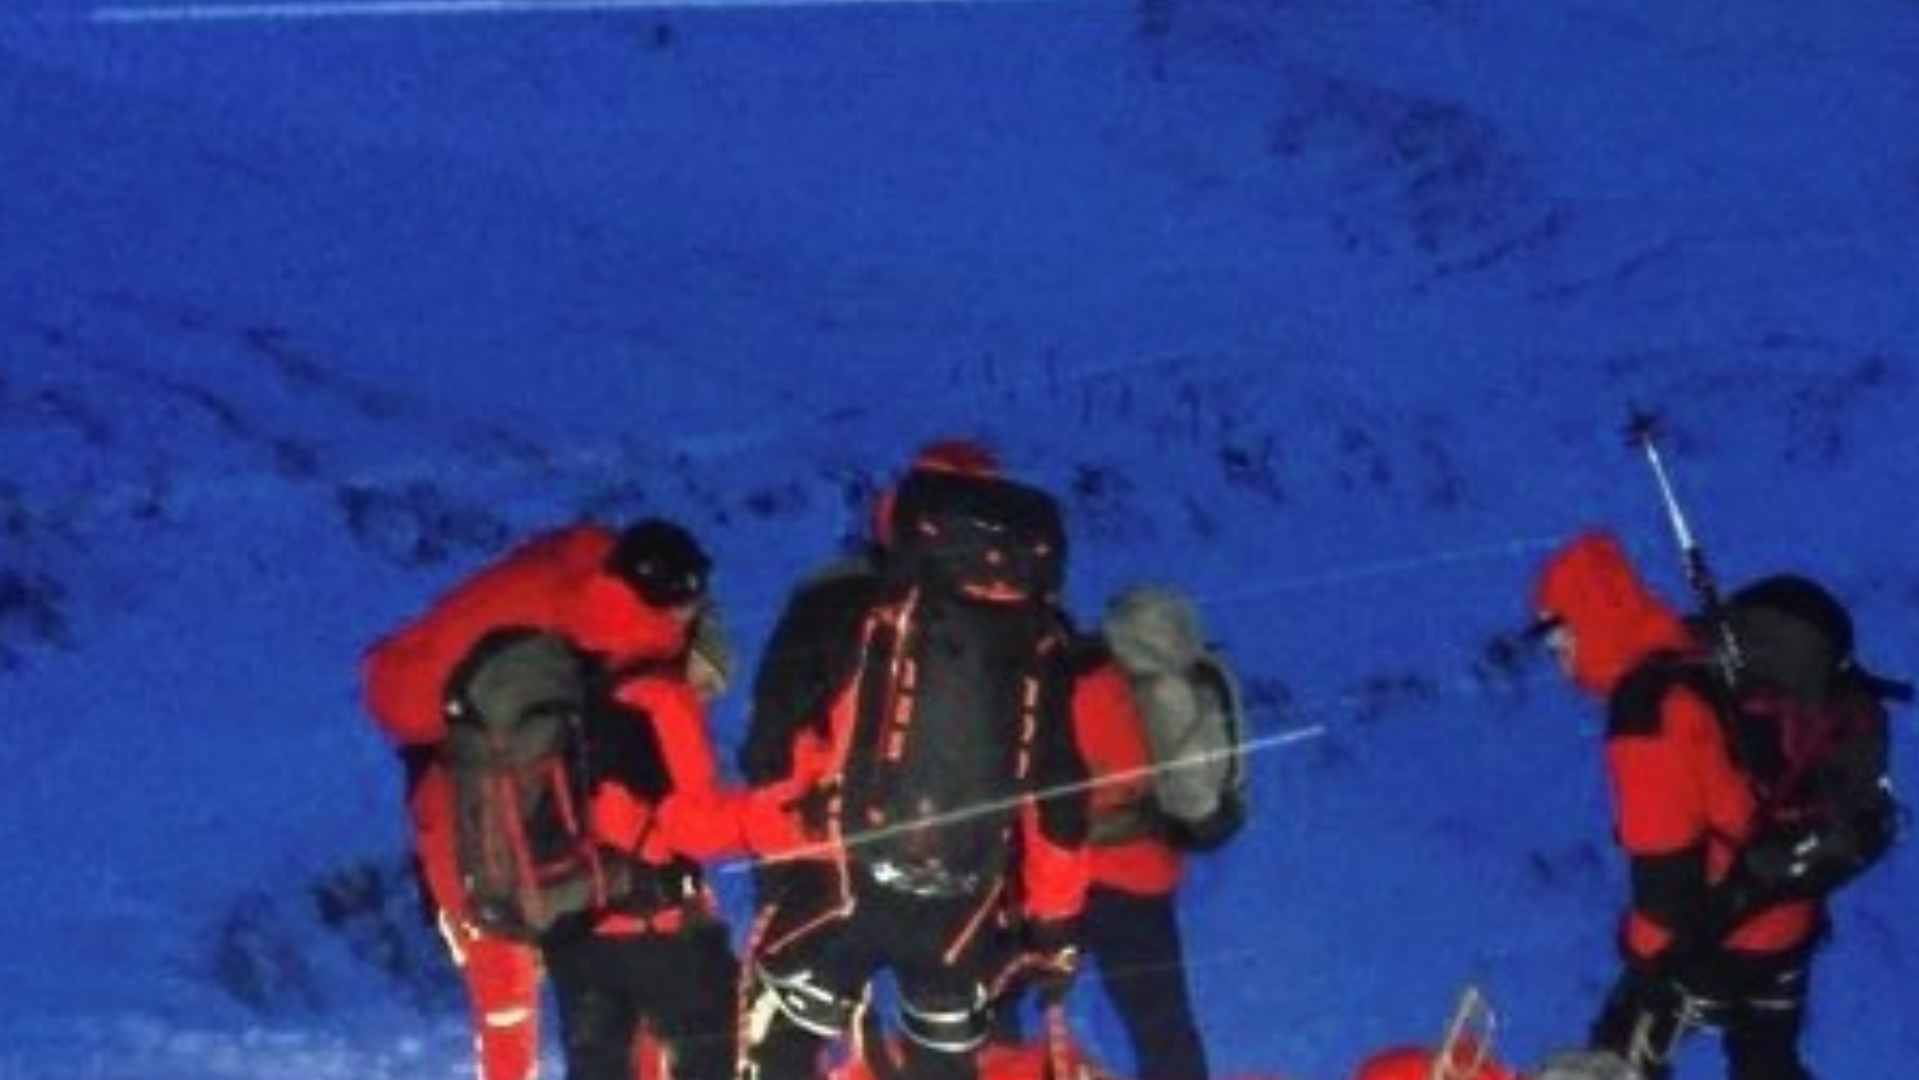 El esquiador desaparecido fue encontrado ileso en plena noche (imagen simbólica). (Bild: zoom.tirol)